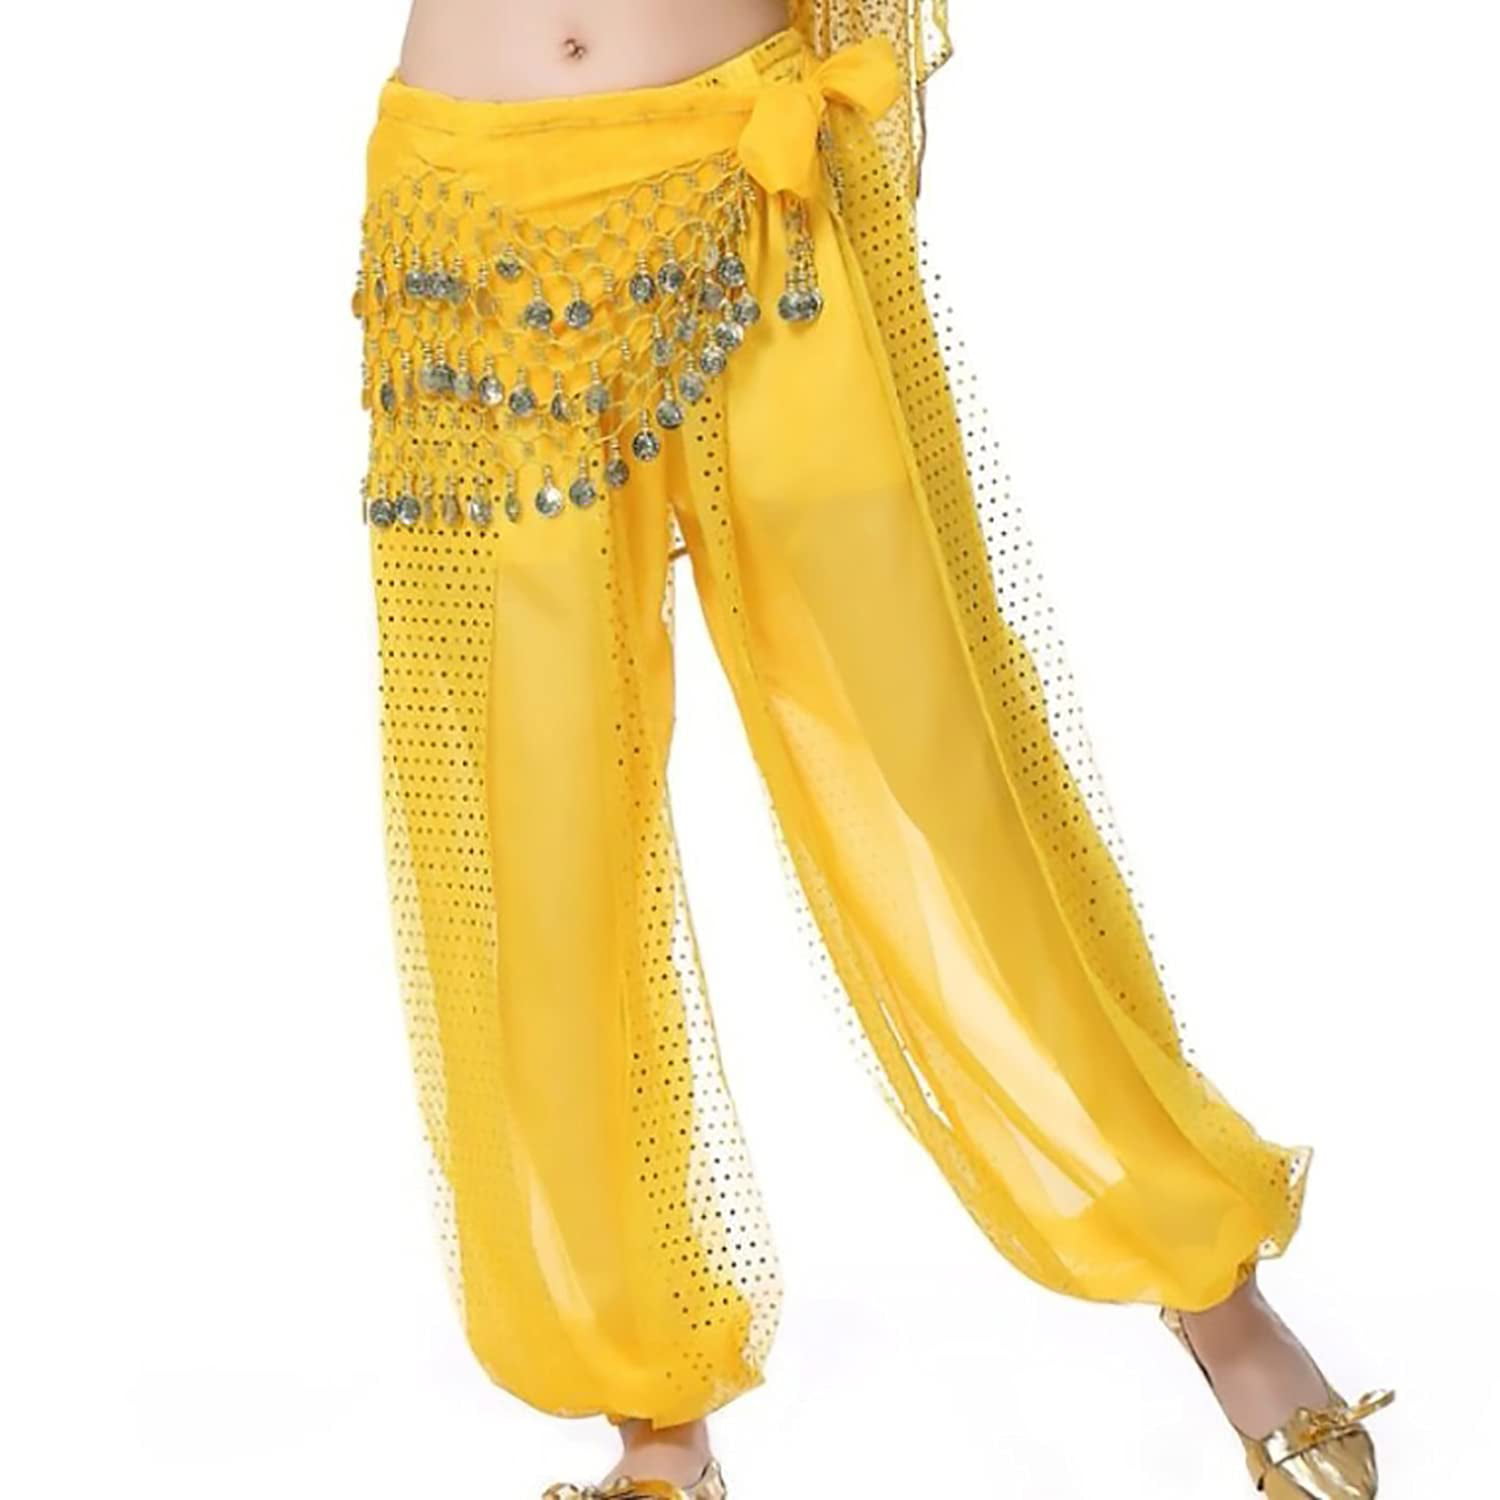 Sheer Harem Belly Dancer Costume Pants in 6 Colors | Sheer Belly Dancer  Pants